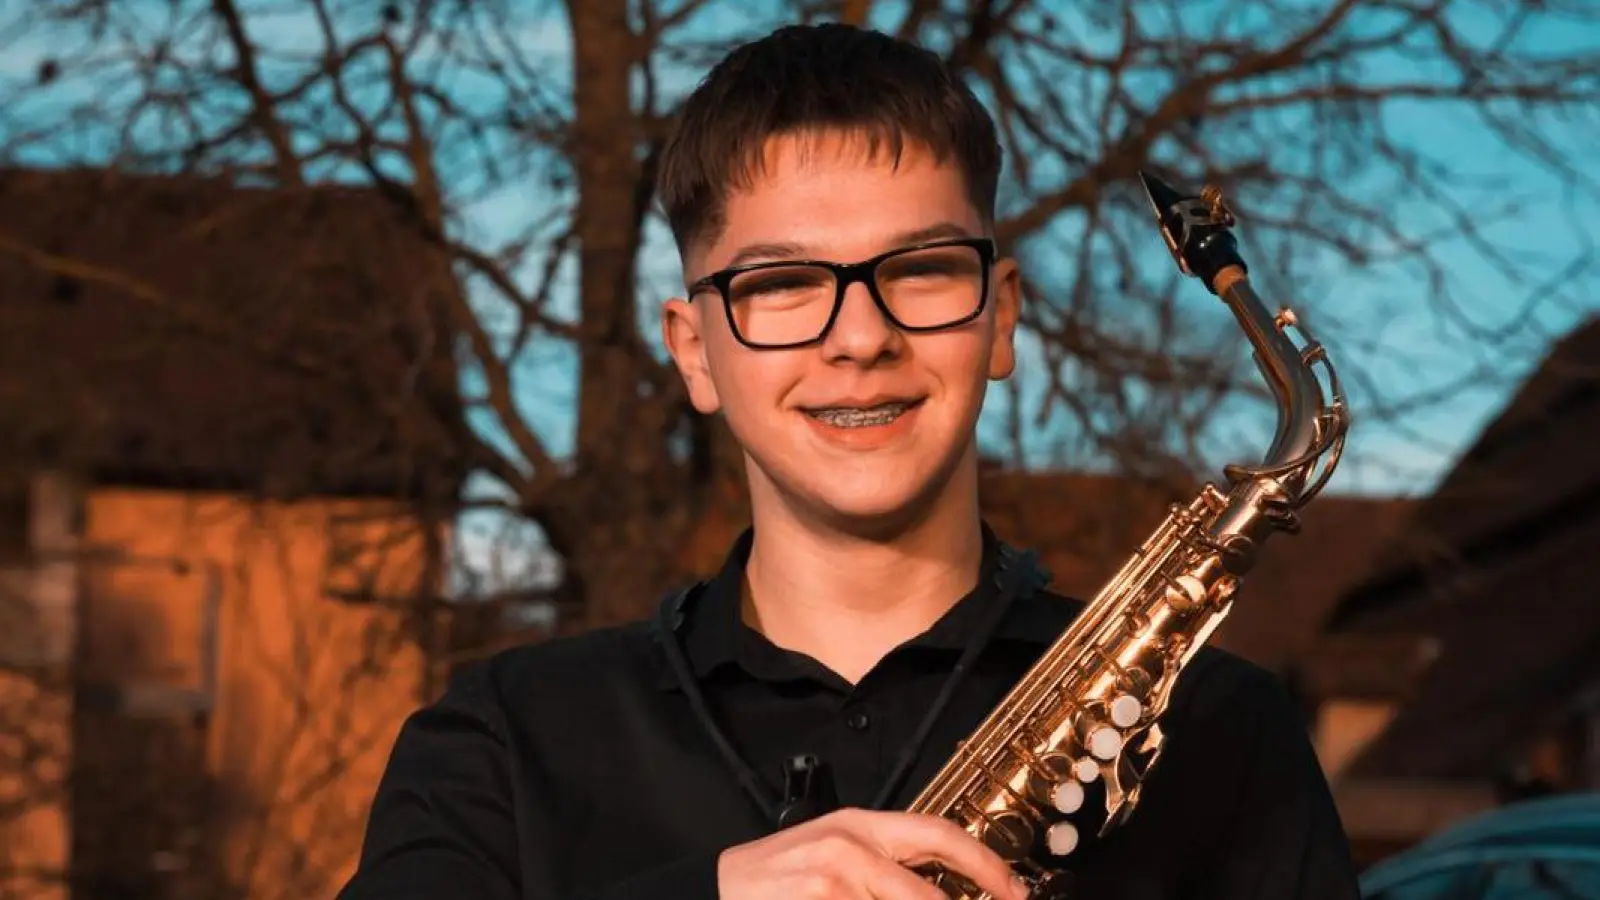 Aladin Dizdarević ist das jüngste Mitglied der Big-Band der Musikschule im Landkreis. Er spielt Altsaxofon. (Foto: Loay Alshammery)